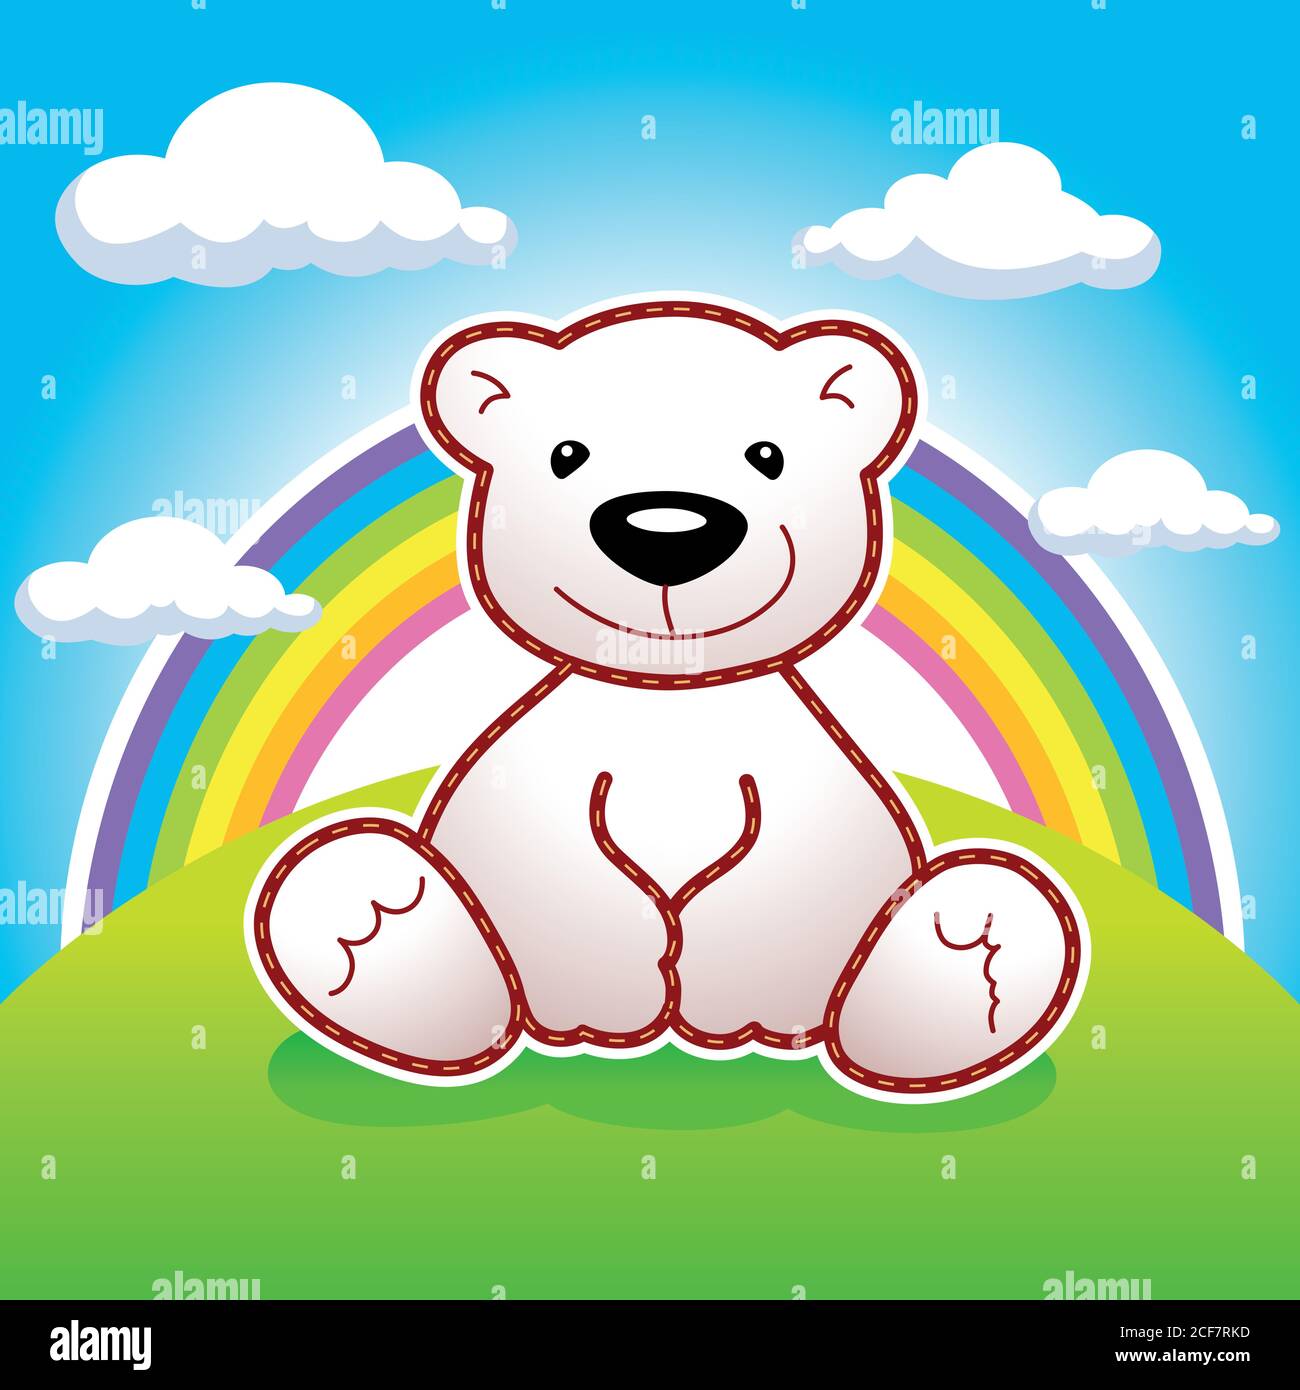 Spielzeug Bär sitzt auf Wiese unter Regenbogen und Wolken Vektor-Logo. Animierter Bär. Anzeige, Illustration für Spielzeugladen oder Märchenbuch. Grußkartendesign. Stock Vektor